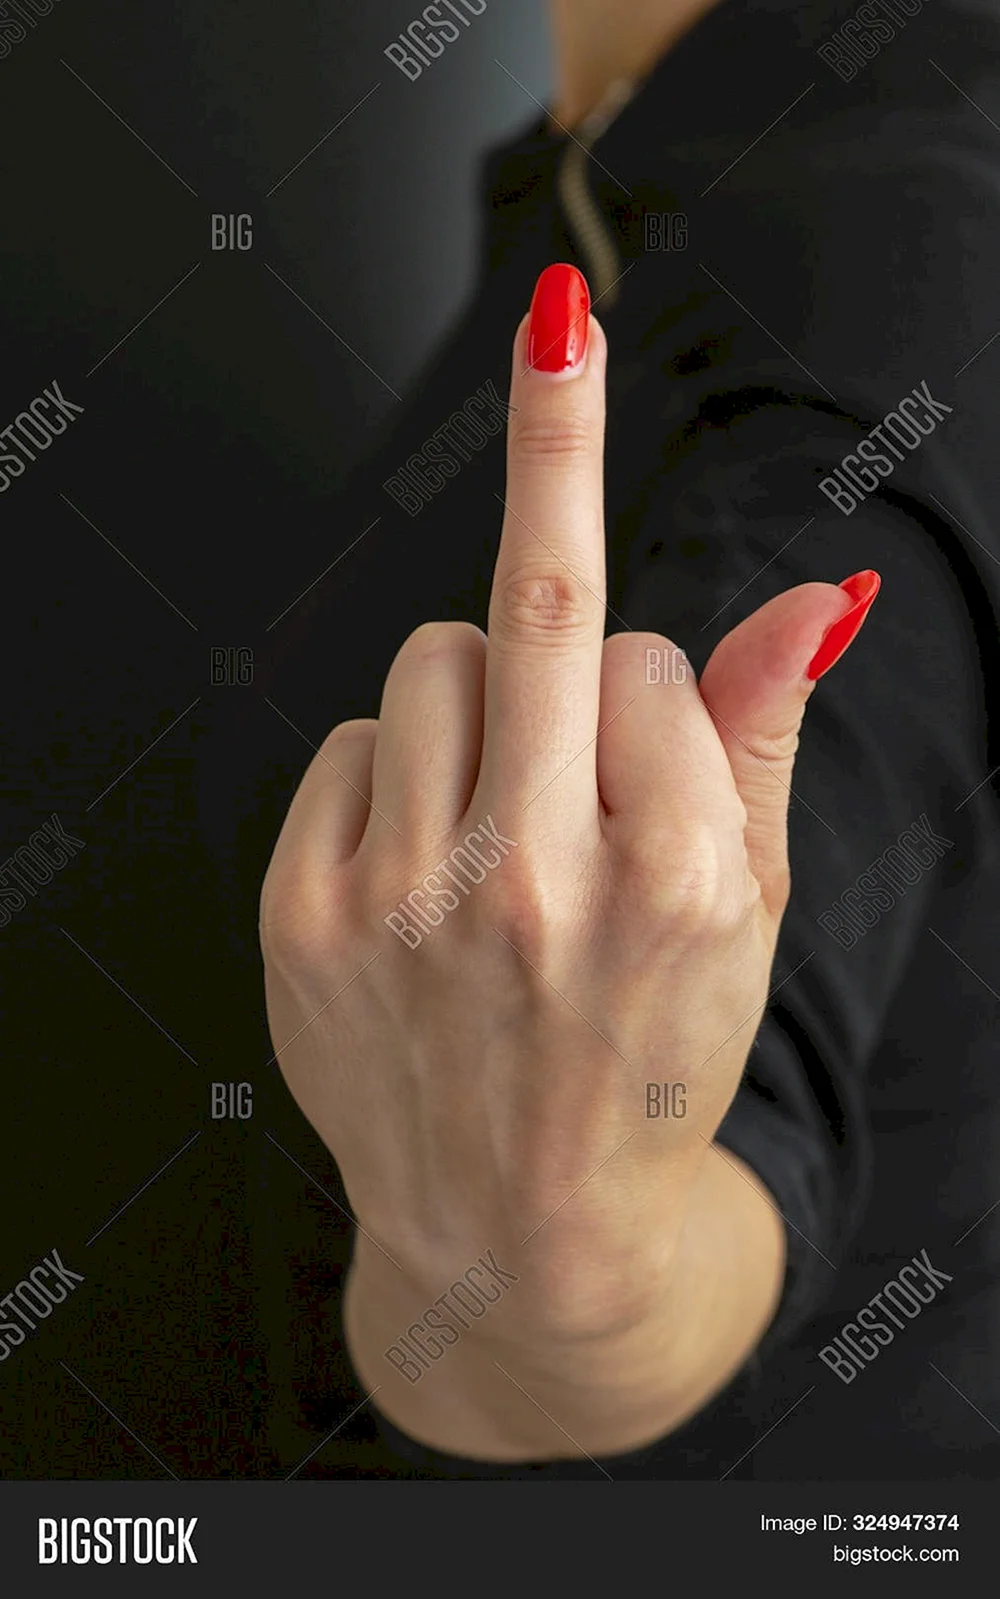 Middle finger gesture